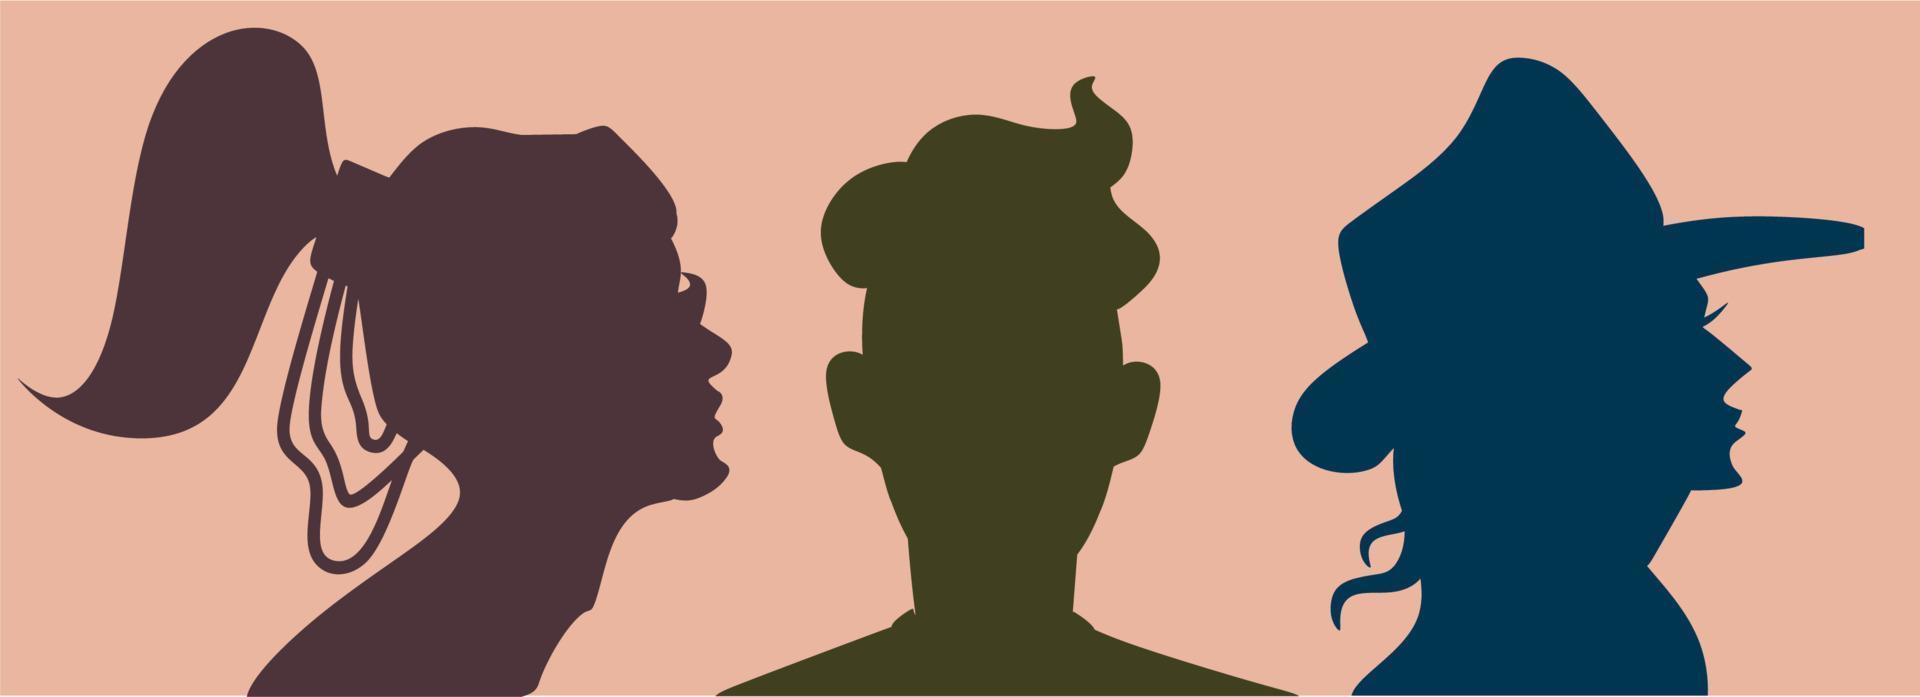 tres siluetas humanas en colores pastel. perfiles femeninos y masculinos en colores azul, morado y caqui. el fondo es un rectángulo de durazno. vector